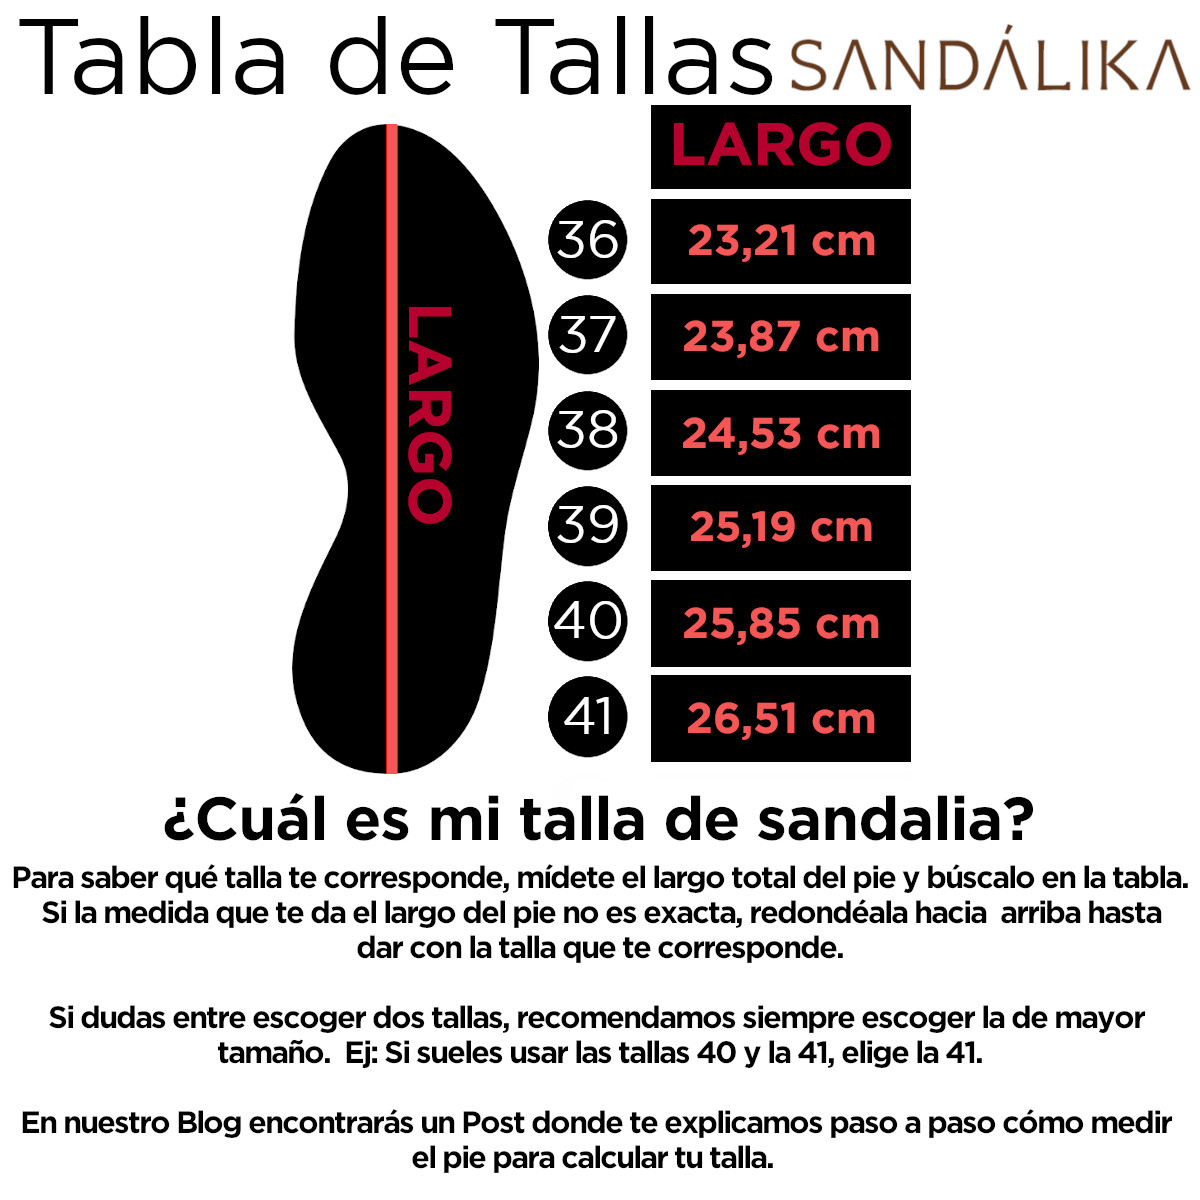 tabla de tallas sandalika_1.jpg